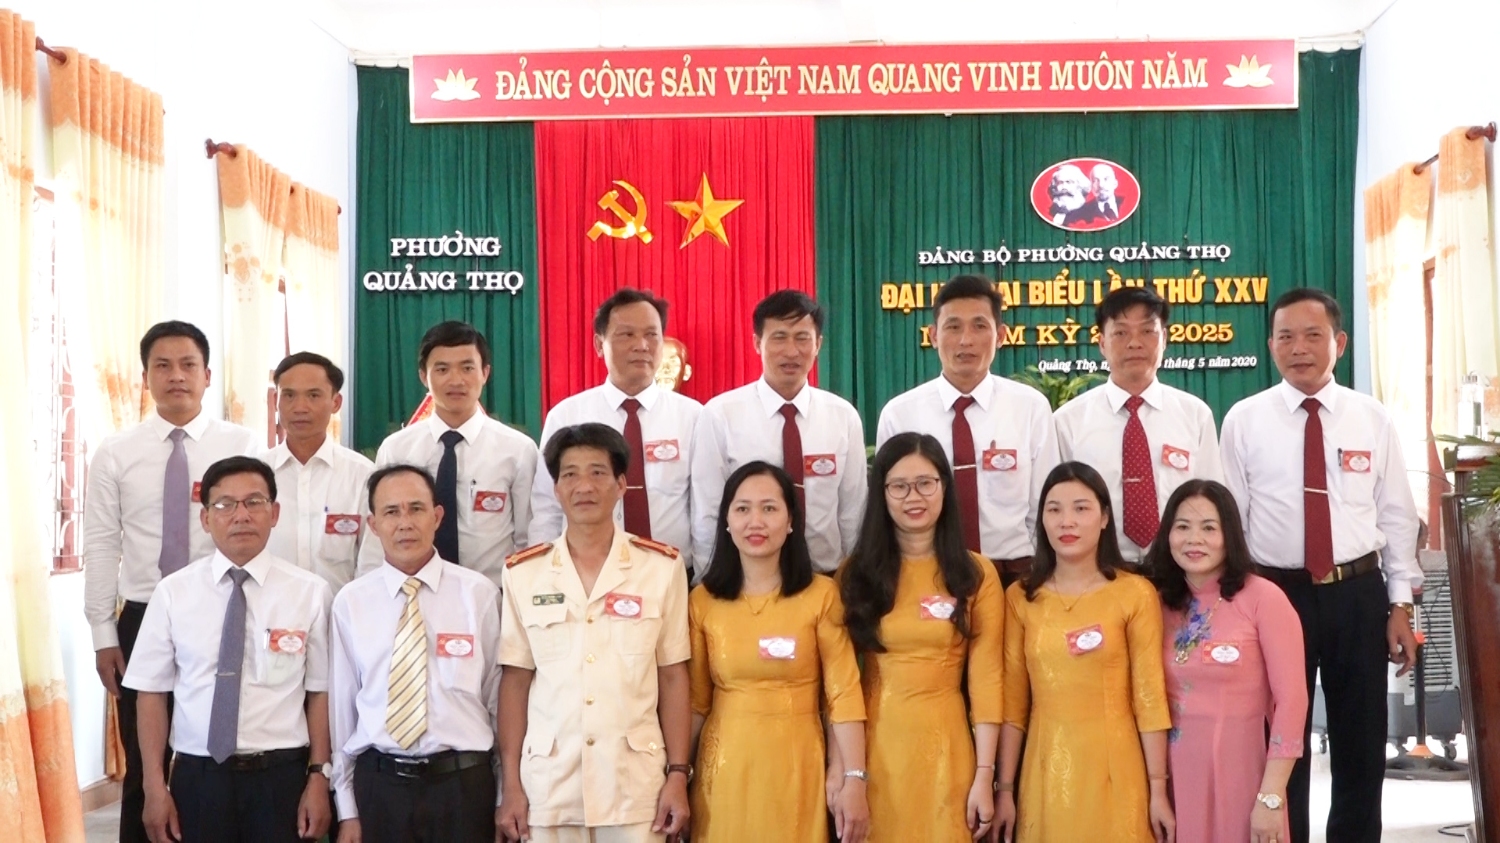 ban chấp hành nhiệm kỳ mới Đại hội Đảng bộ phường Quảng Thọ lần thứ XXV